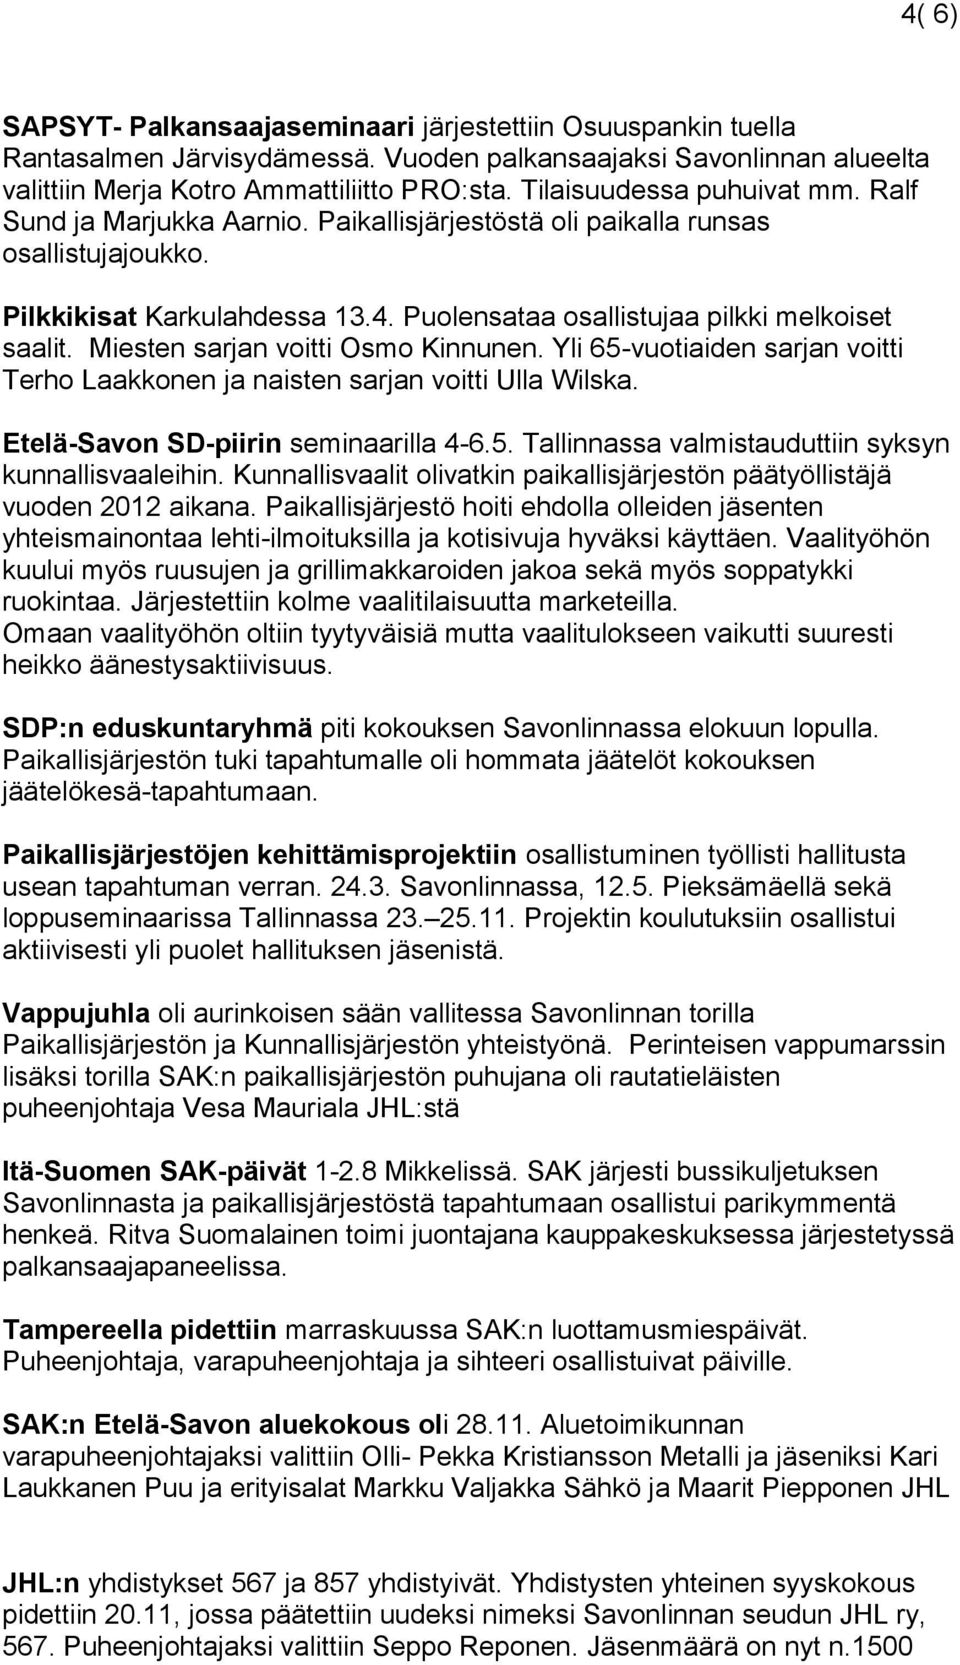 Miesten sarjan voitti Osmo Kinnunen. Yli 65-vuotiaiden sarjan voitti Terho Laakkonen ja naisten sarjan voitti Ulla Wilska. Etelä-Savon SD-piirin seminaarilla 4-6.5. Tallinnassa valmistauduttiin syksyn kunnallisvaaleihin.